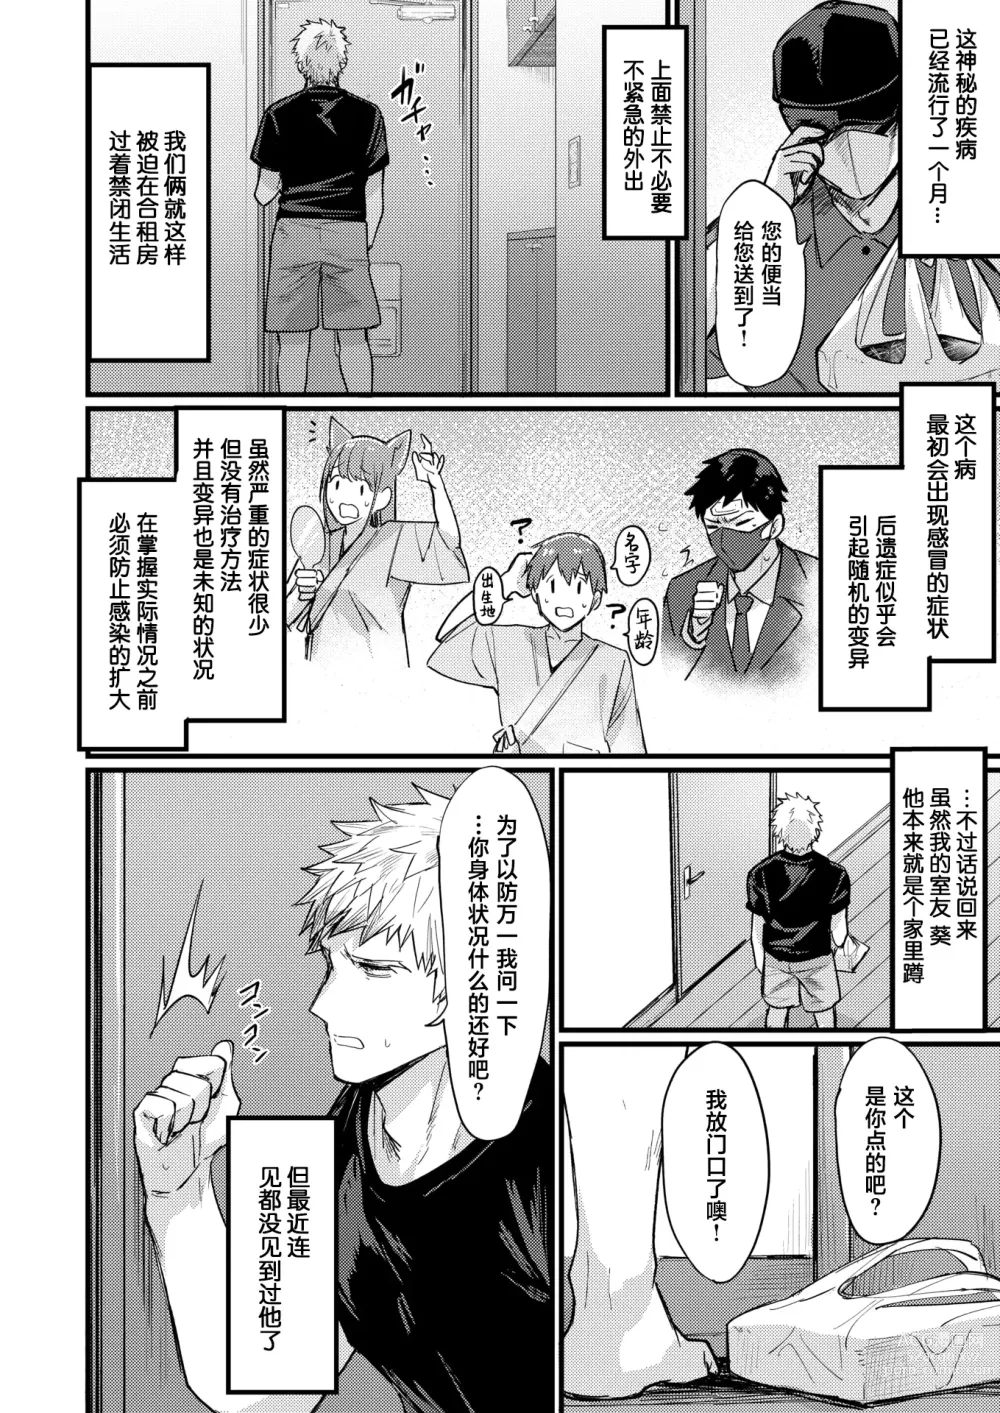 Page 2 of manga Shinya no TS Panic